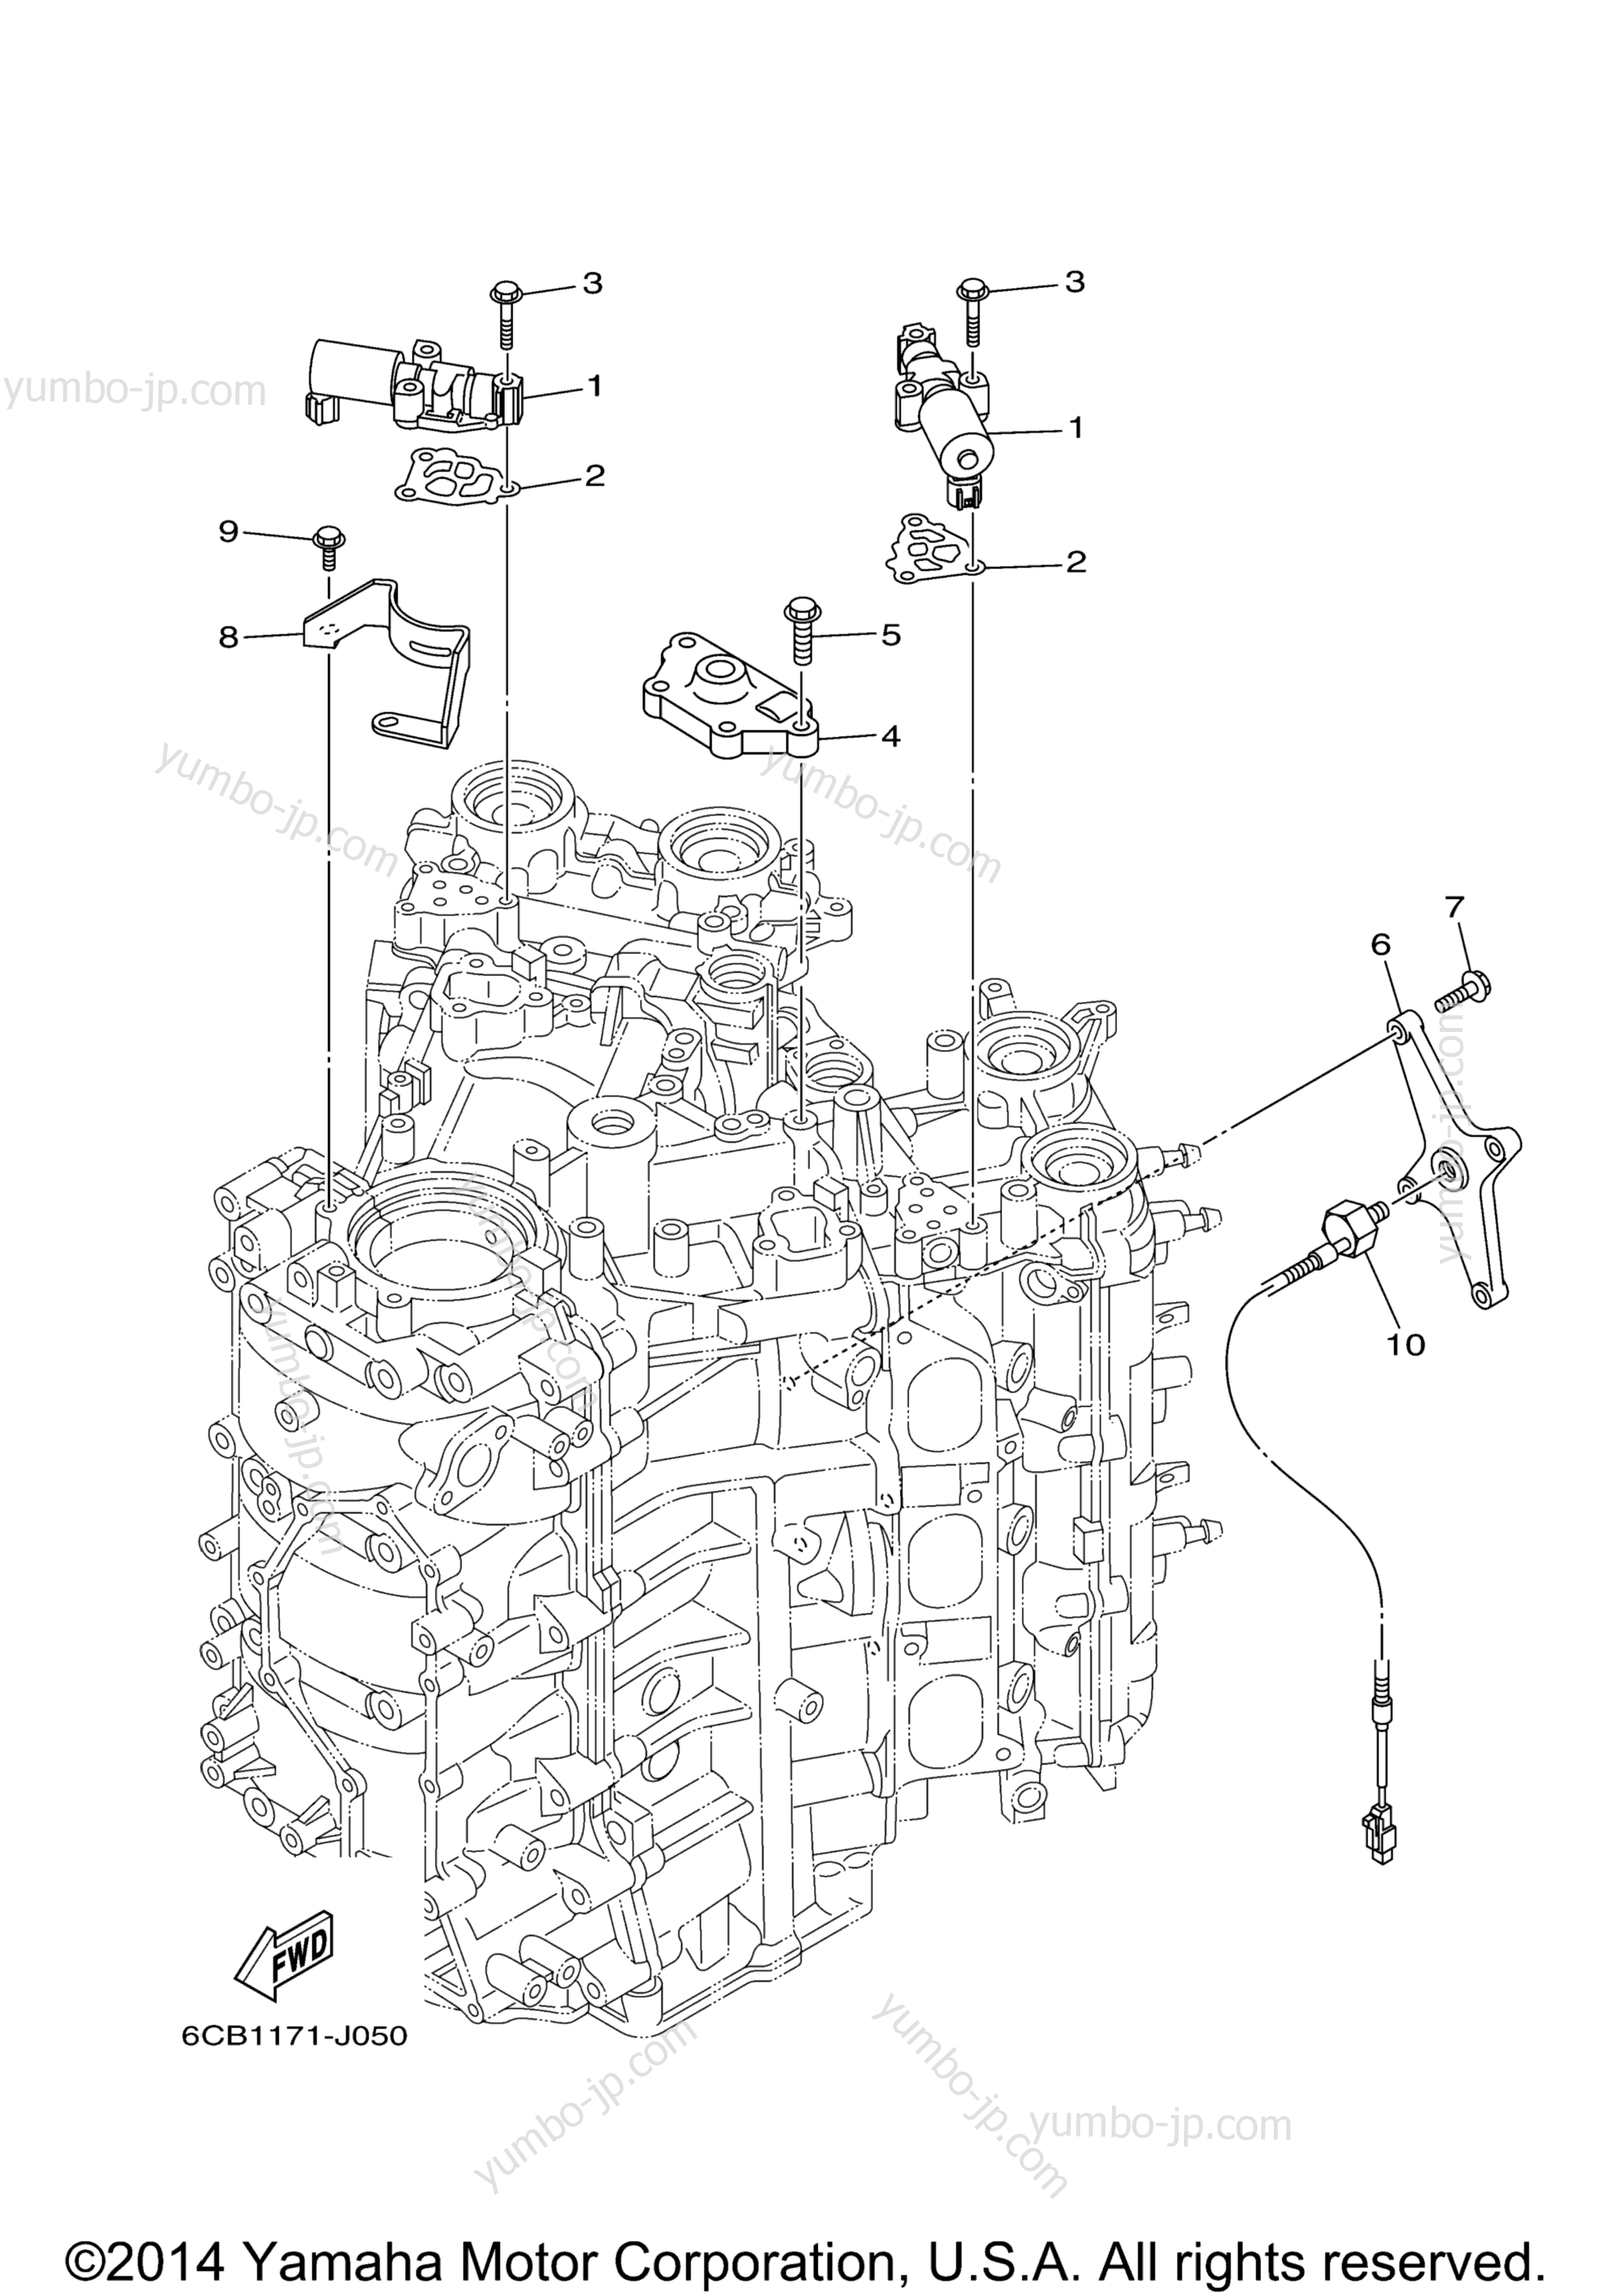 Cylinder Crankcase 3 для лодочных моторов YAMAHA F300XCA_01 (0112) 2006 г.